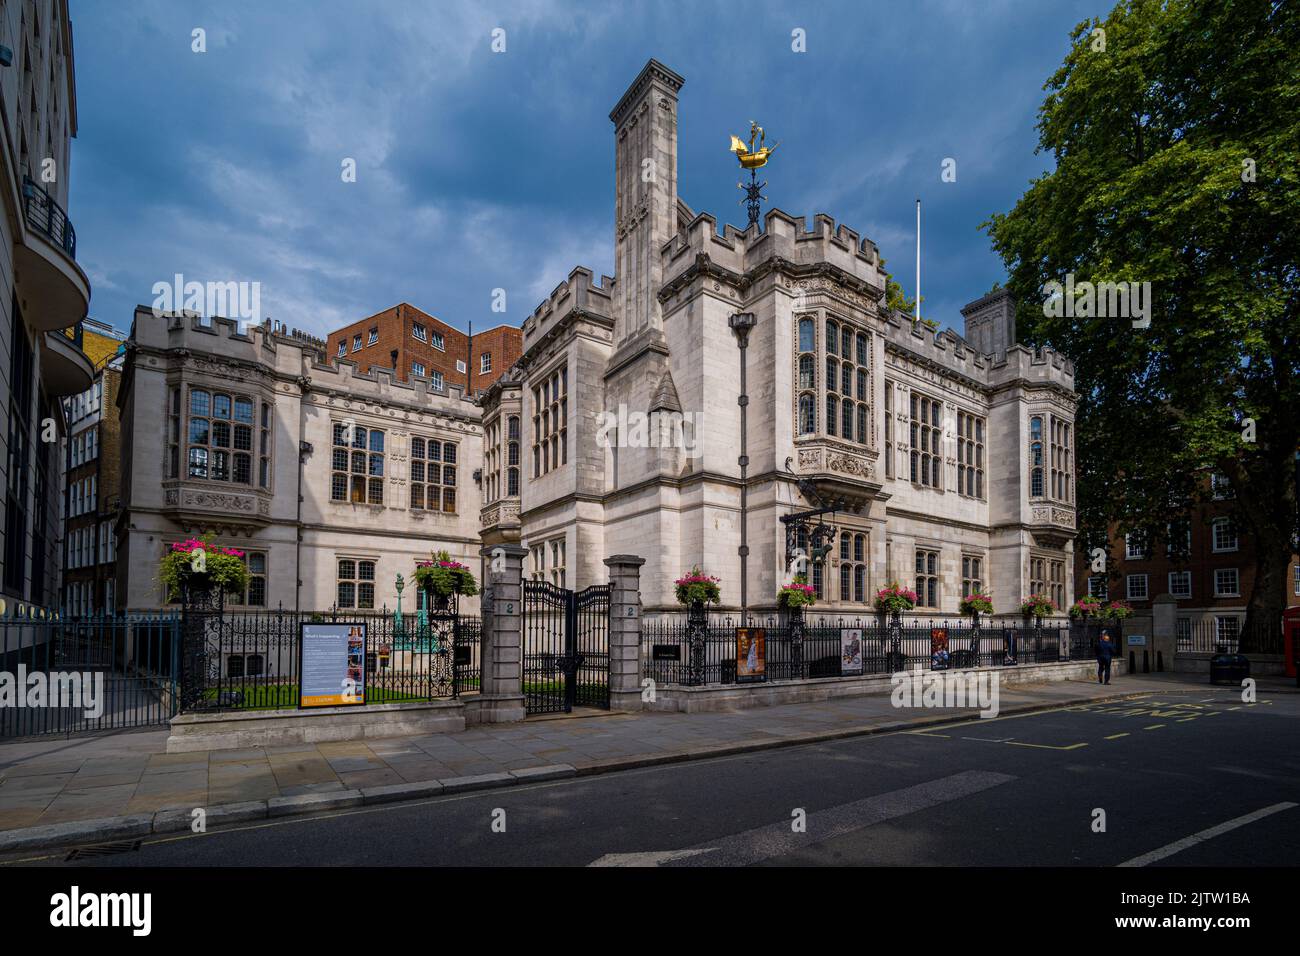 Two Temple place, anciennement Astor House, est une galerie d'art publique située près de Victoria Embankment Central London. Construit en 1895. 2 Temple place. Banque D'Images